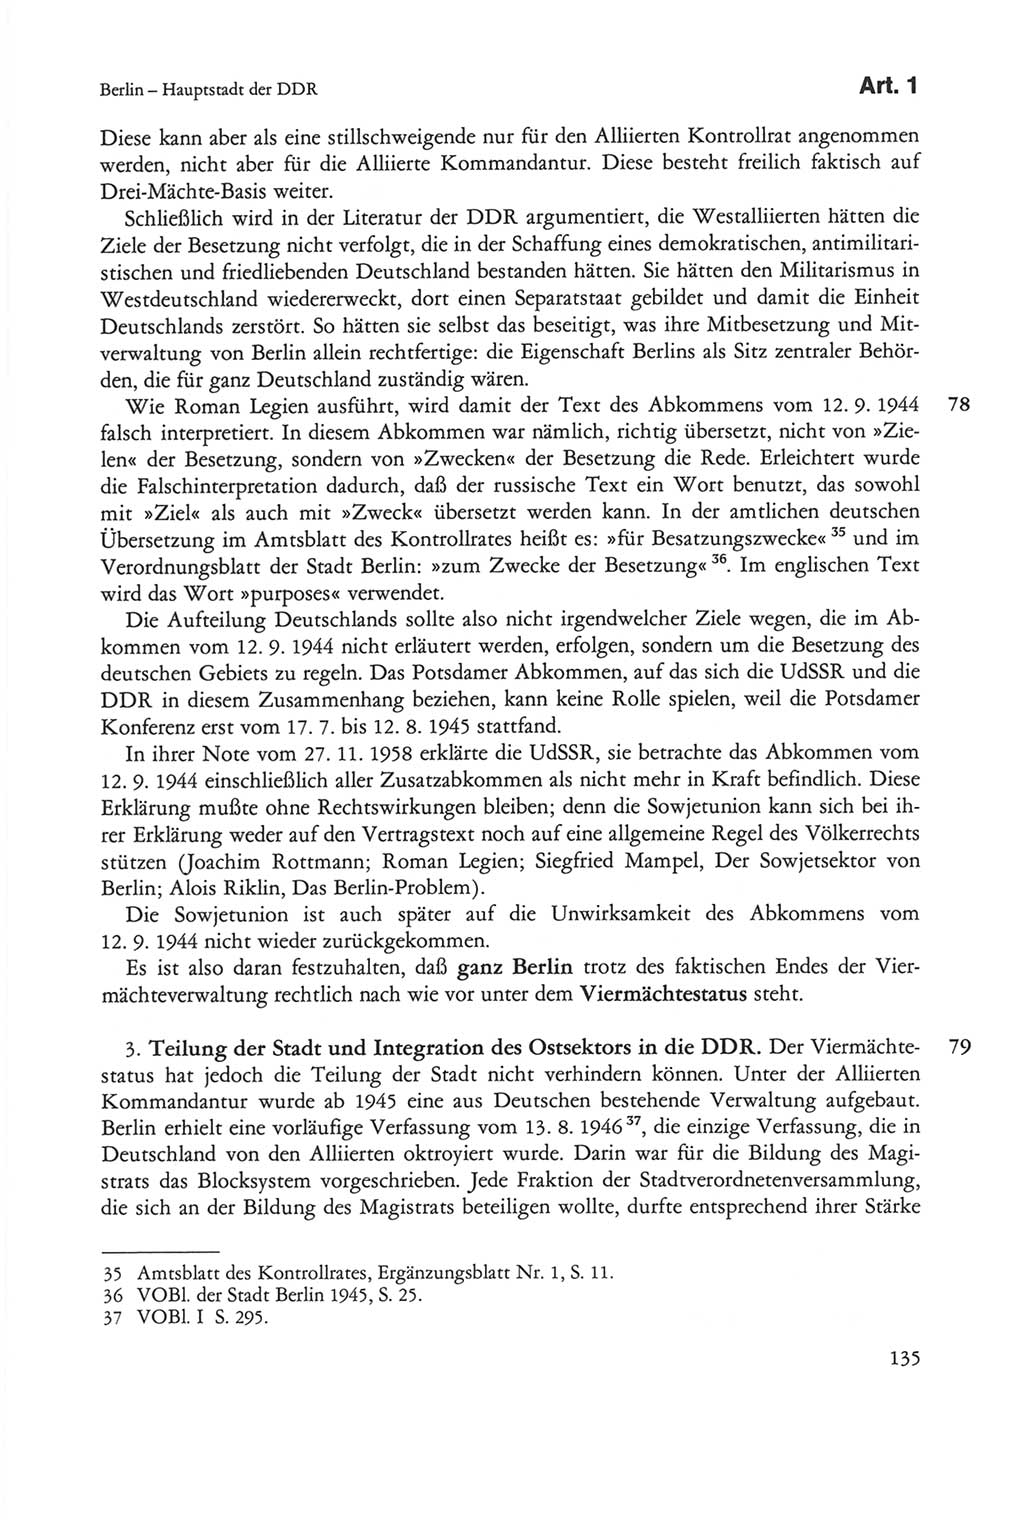 Die sozialistische Verfassung der Deutschen Demokratischen Republik (DDR), Kommentar mit einem Nachtrag 1997, Seite 135 (Soz. Verf. DDR Komm. Nachtr. 1997, S. 135)